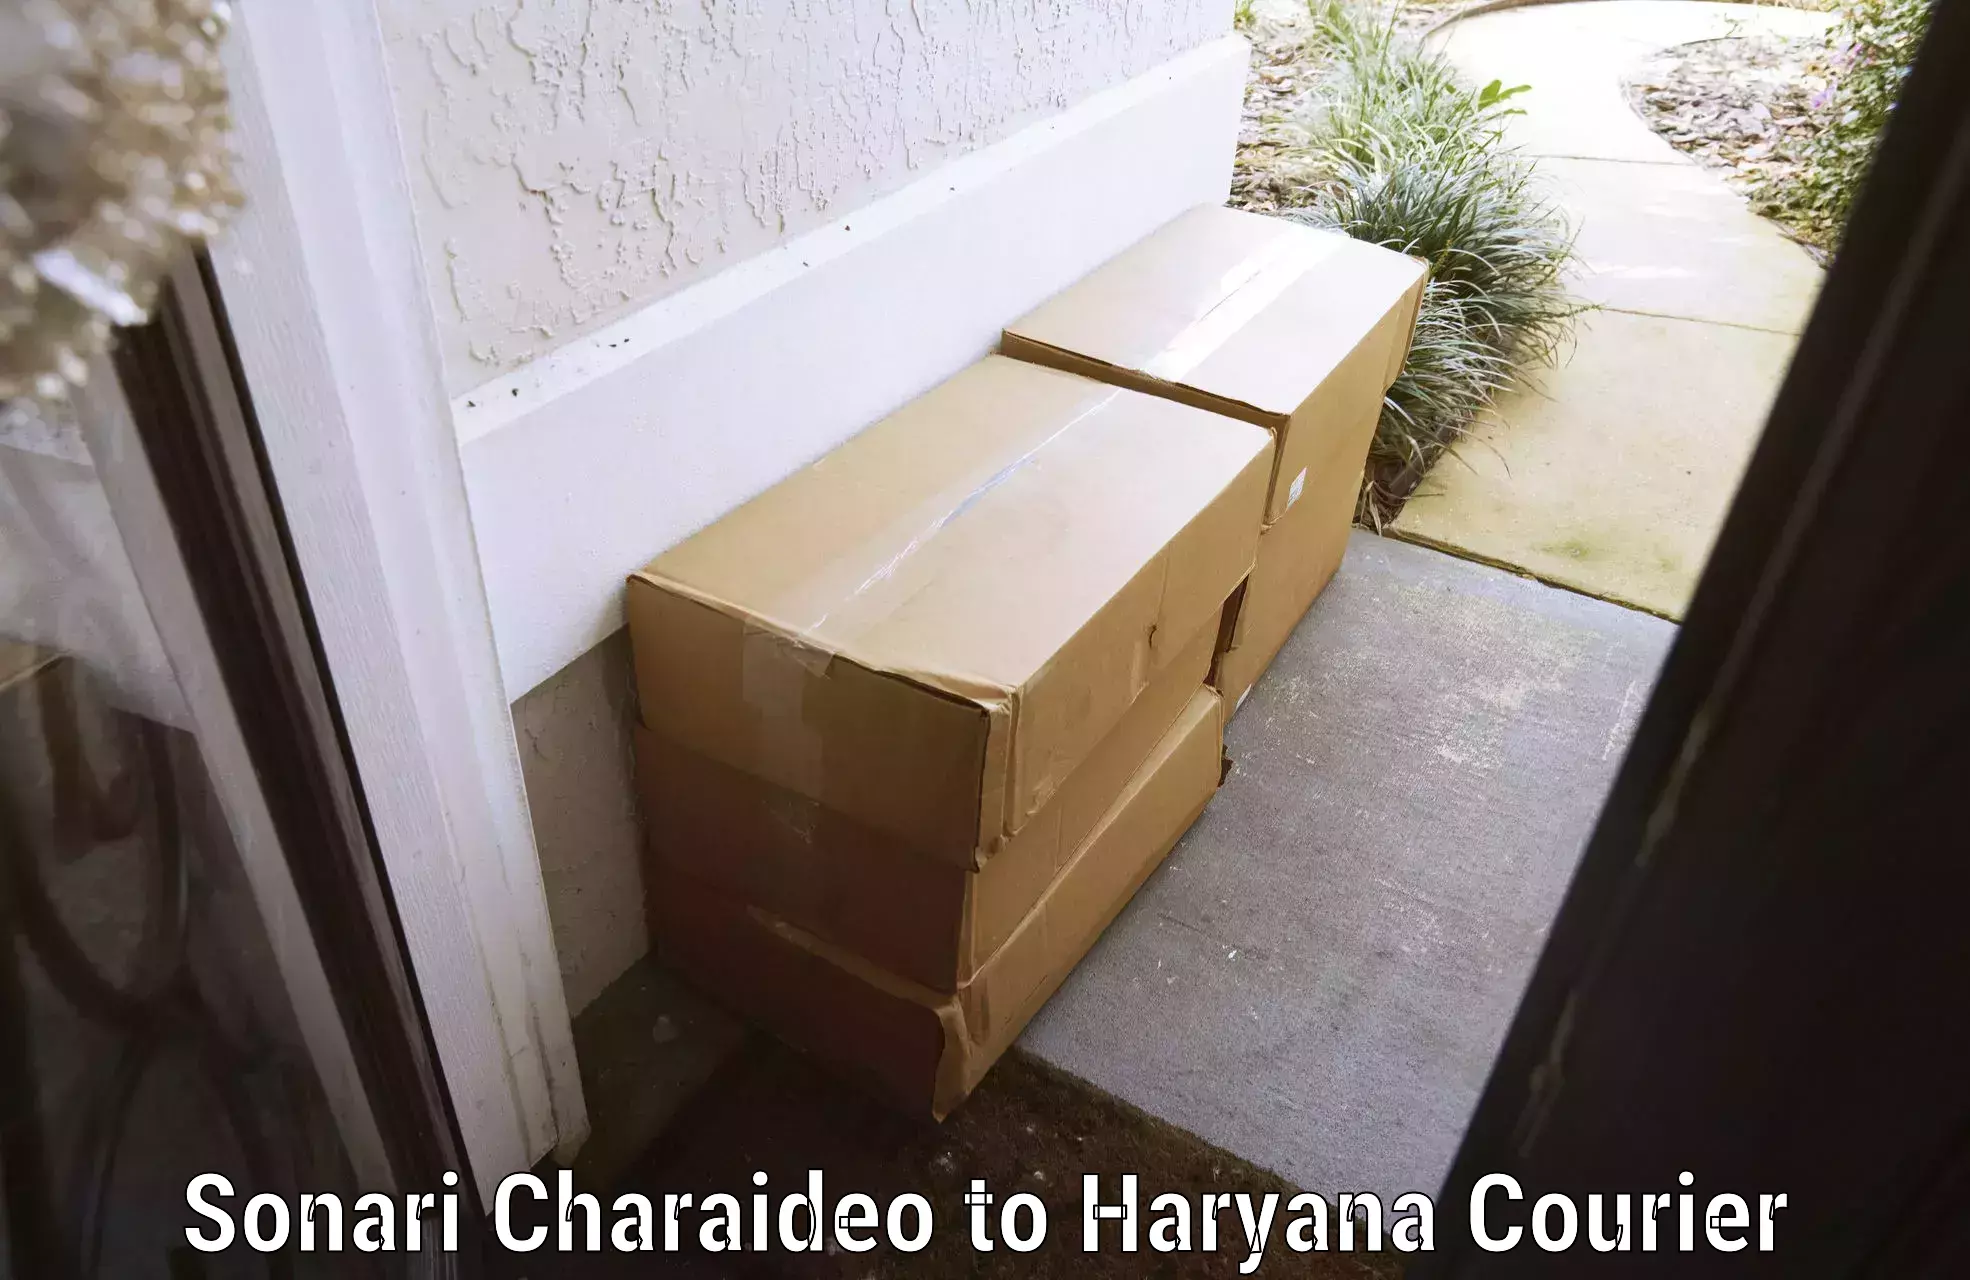 Luggage shipment processing Sonari Charaideo to Chaudhary Charan Singh Haryana Agricultural University Hisar